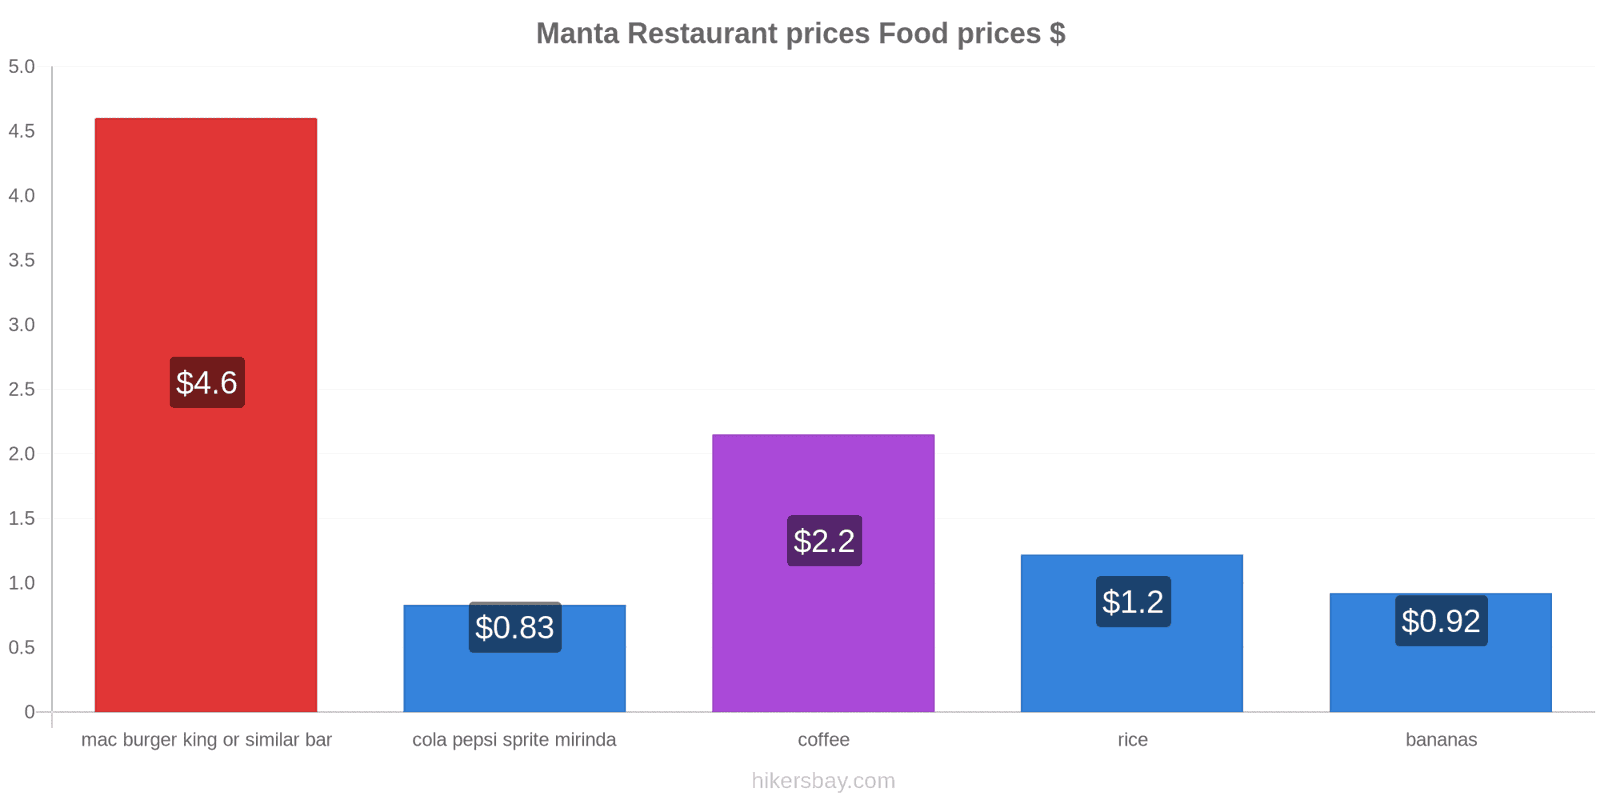 Manta price changes hikersbay.com